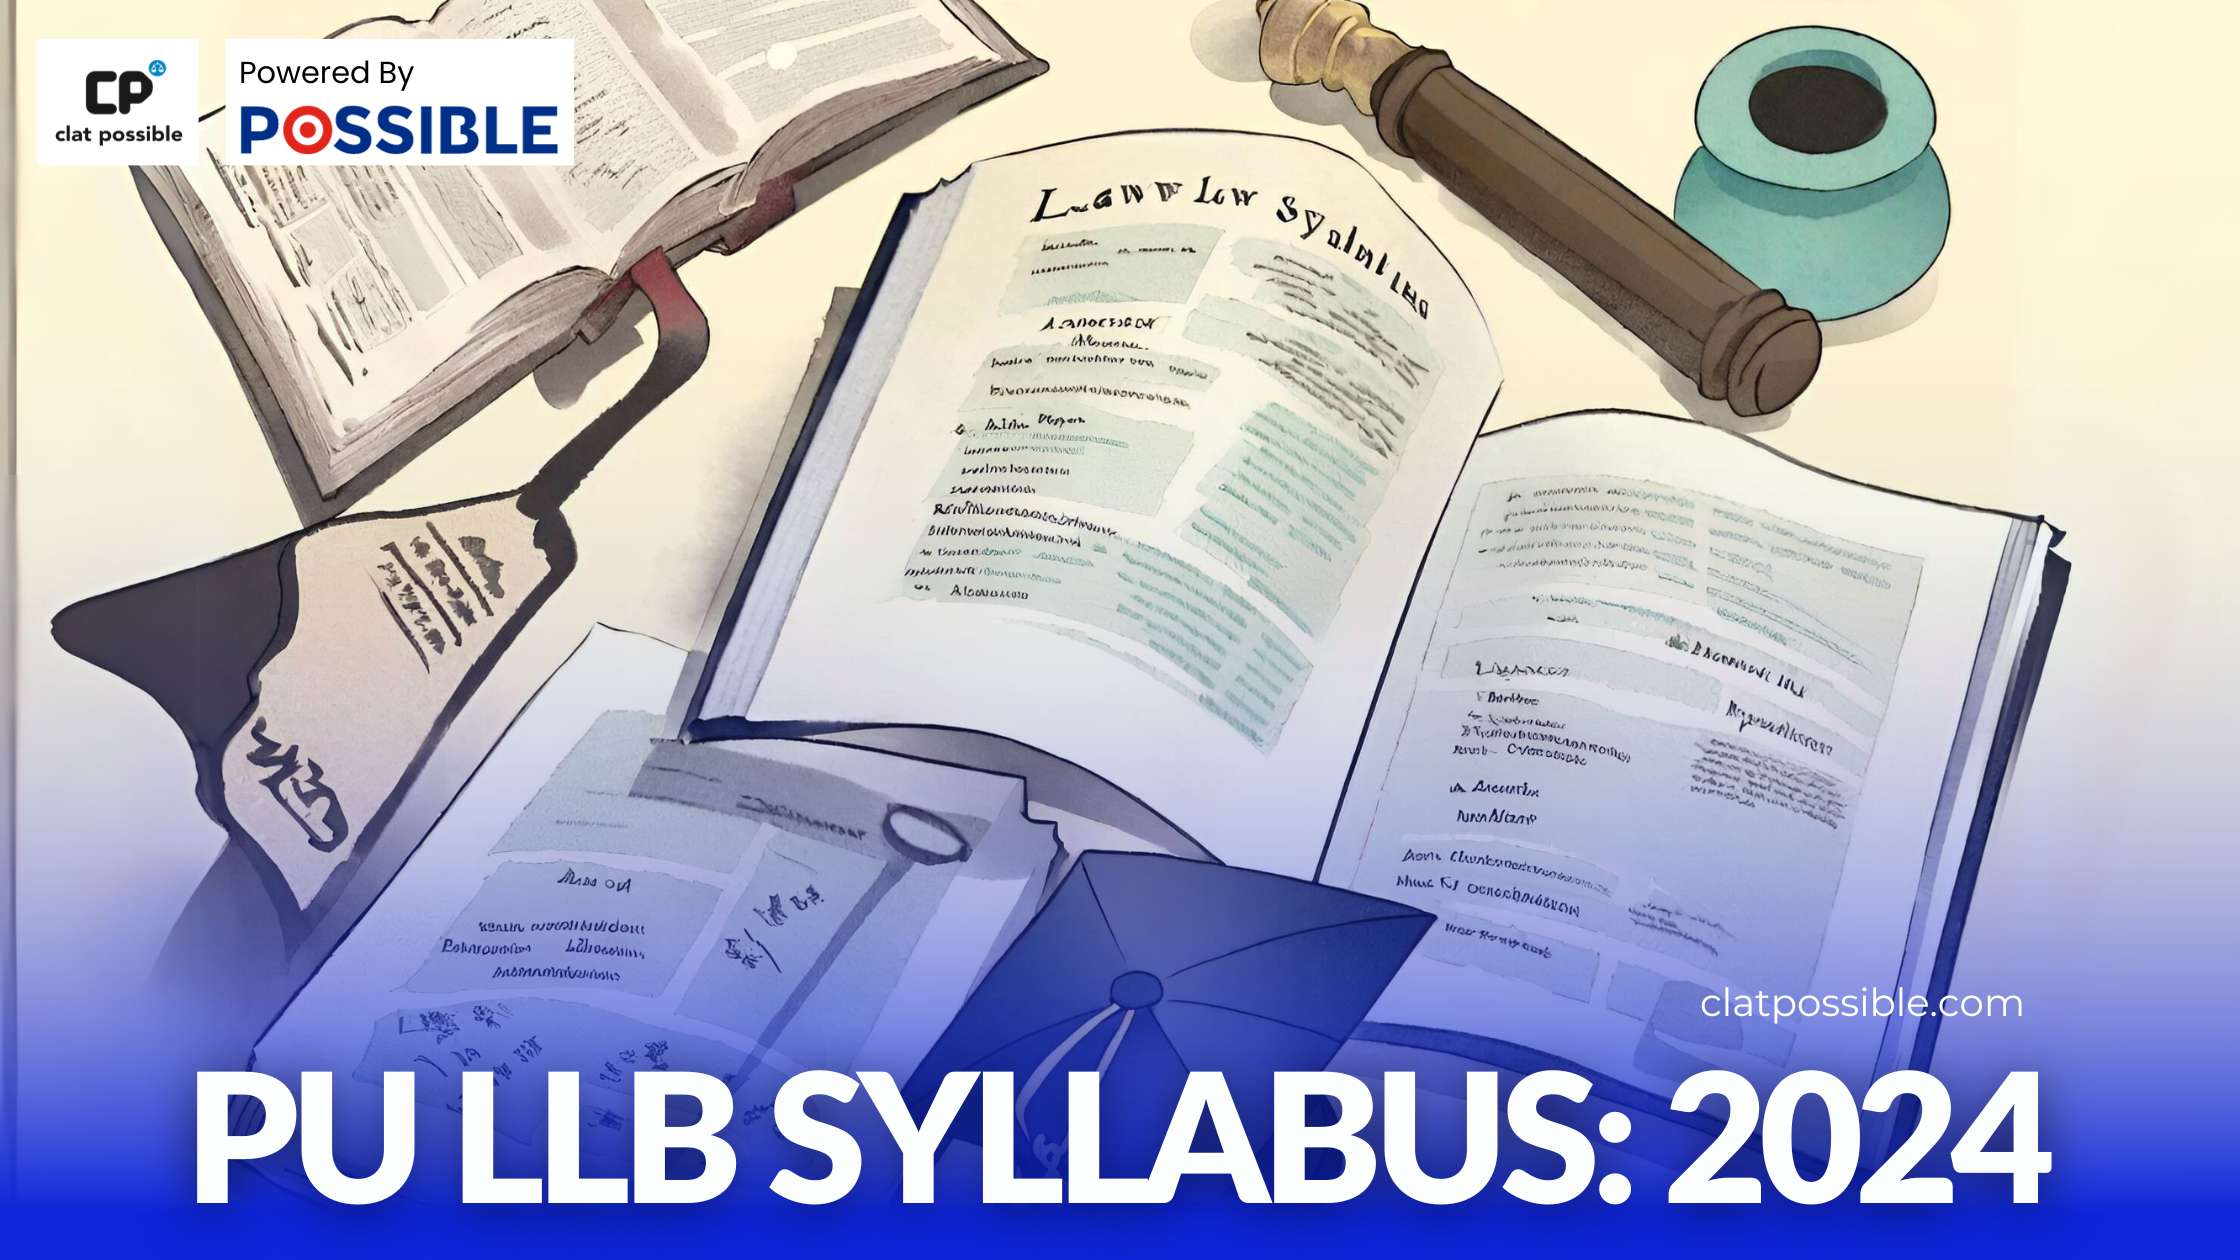 PU LLB Syllabus 2024